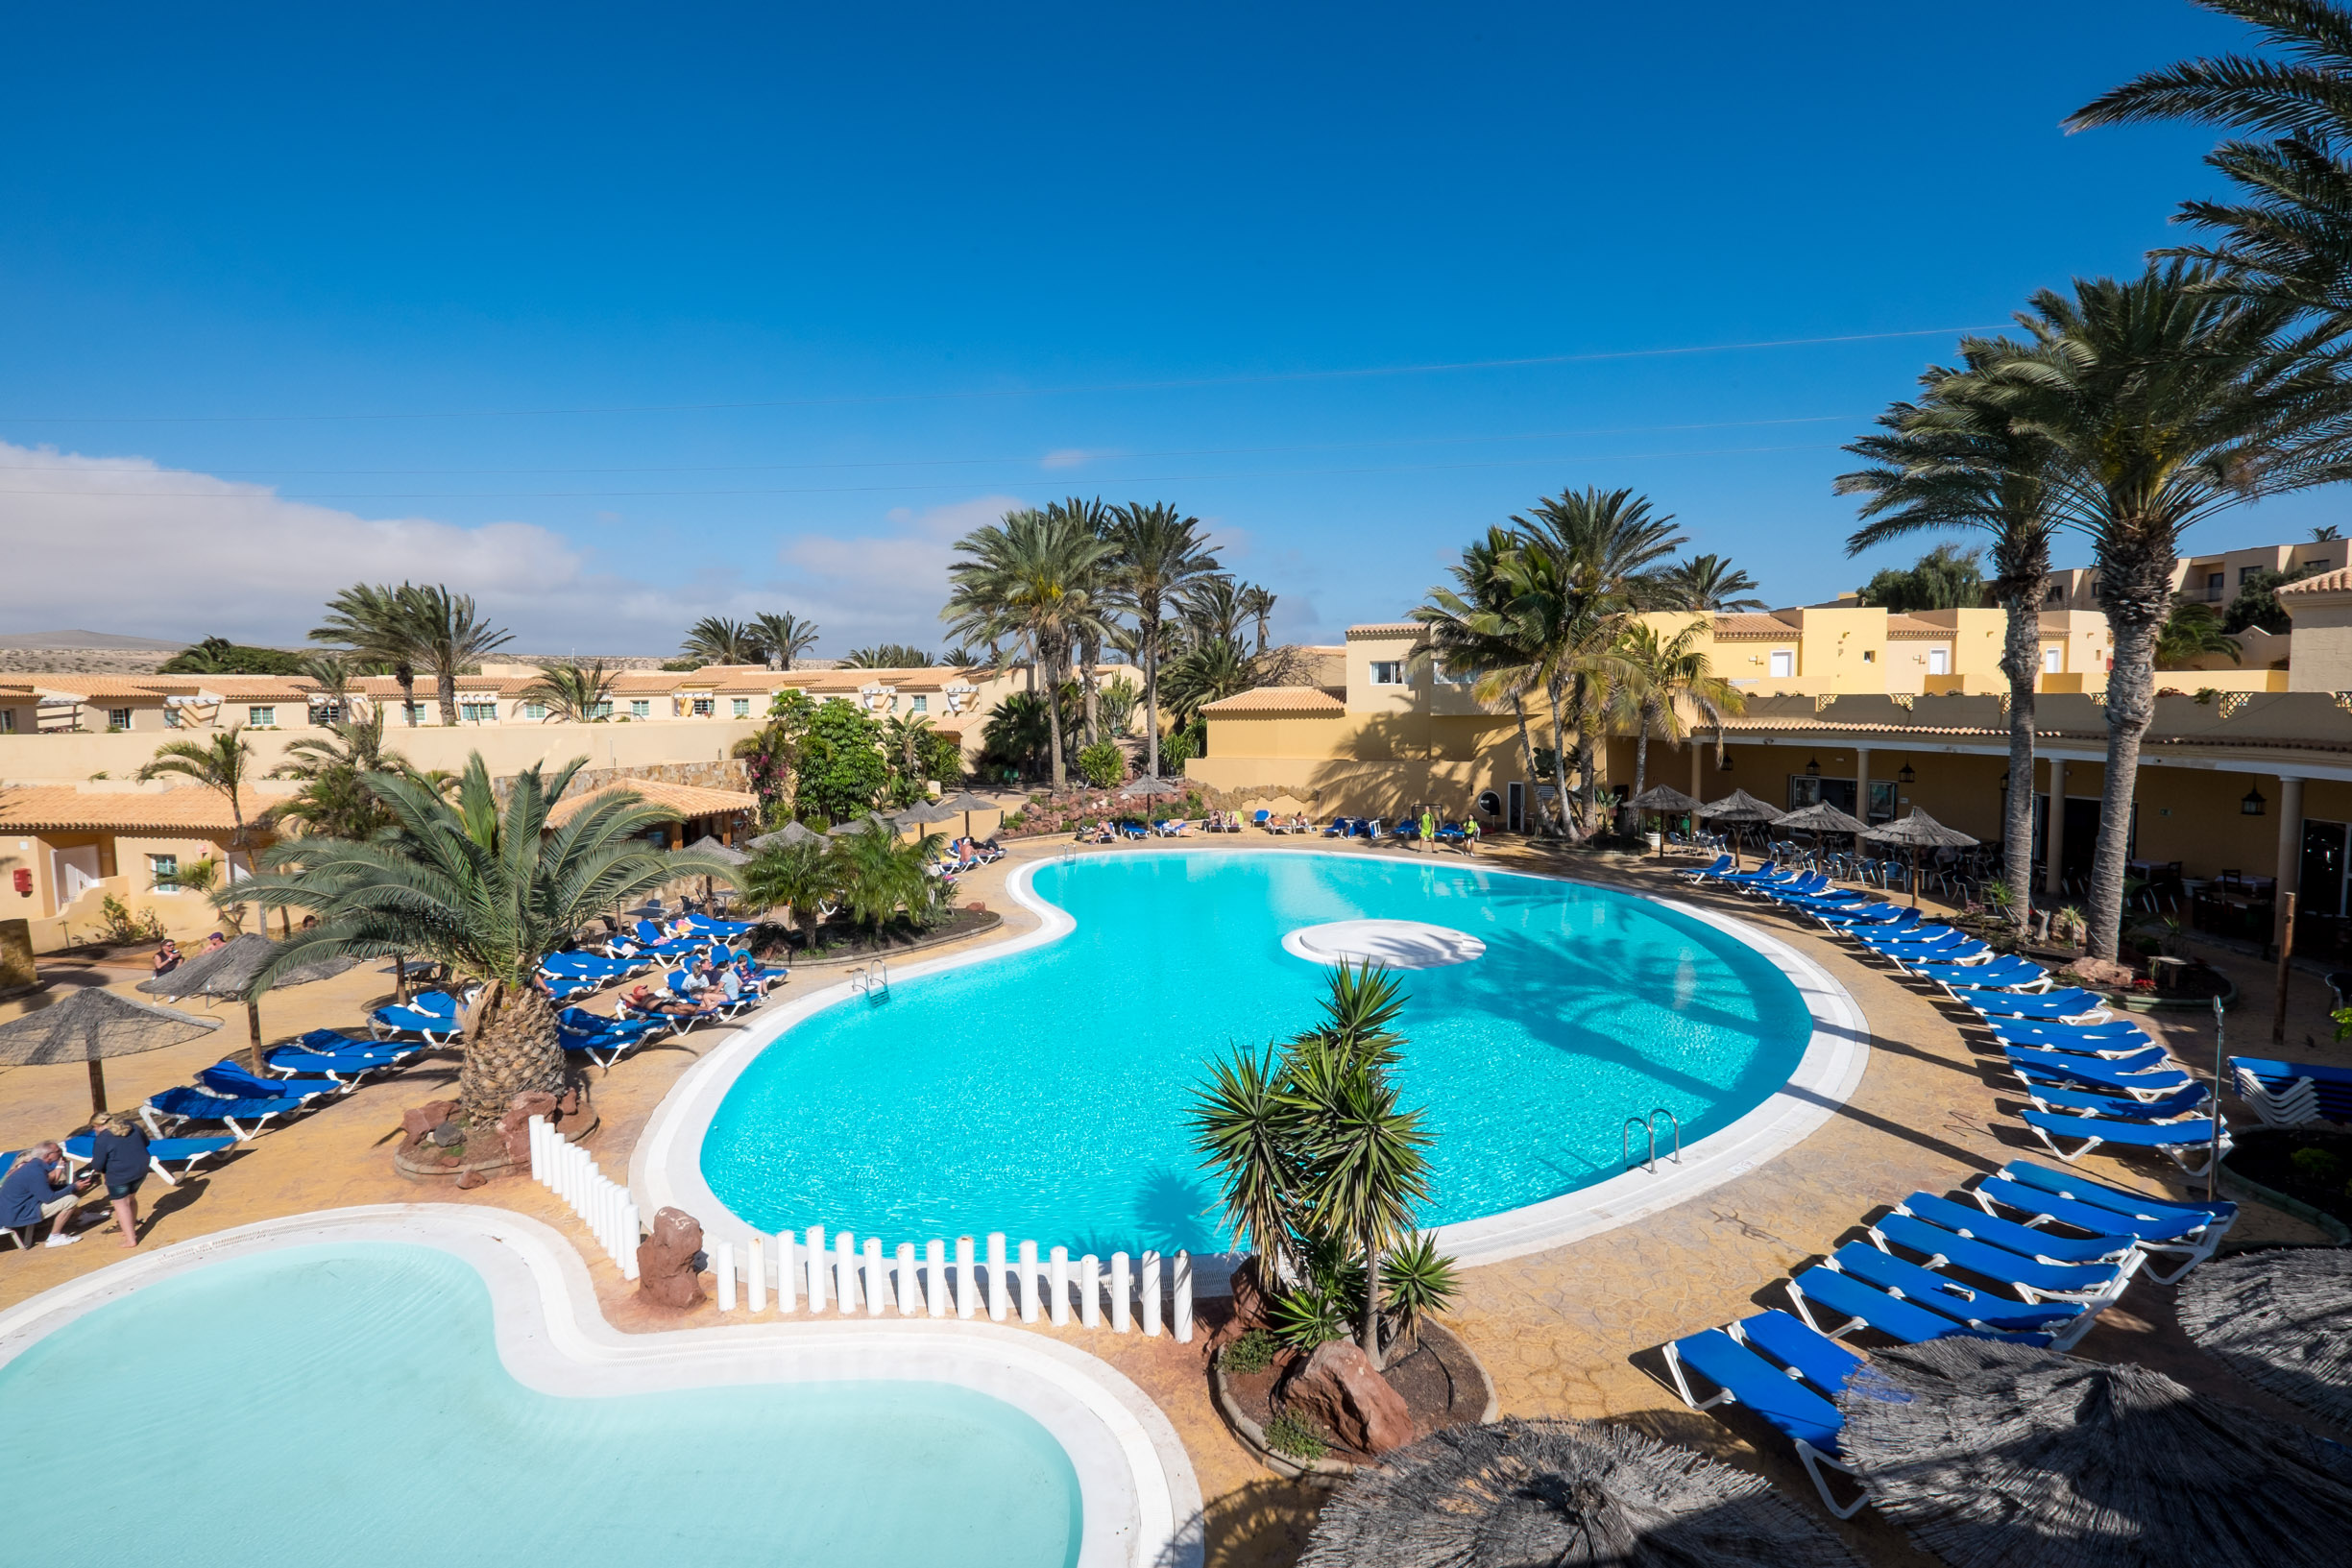 Two Bedroom Royal Hotel Suite in Paphos Cyprus | Elysium Hotel